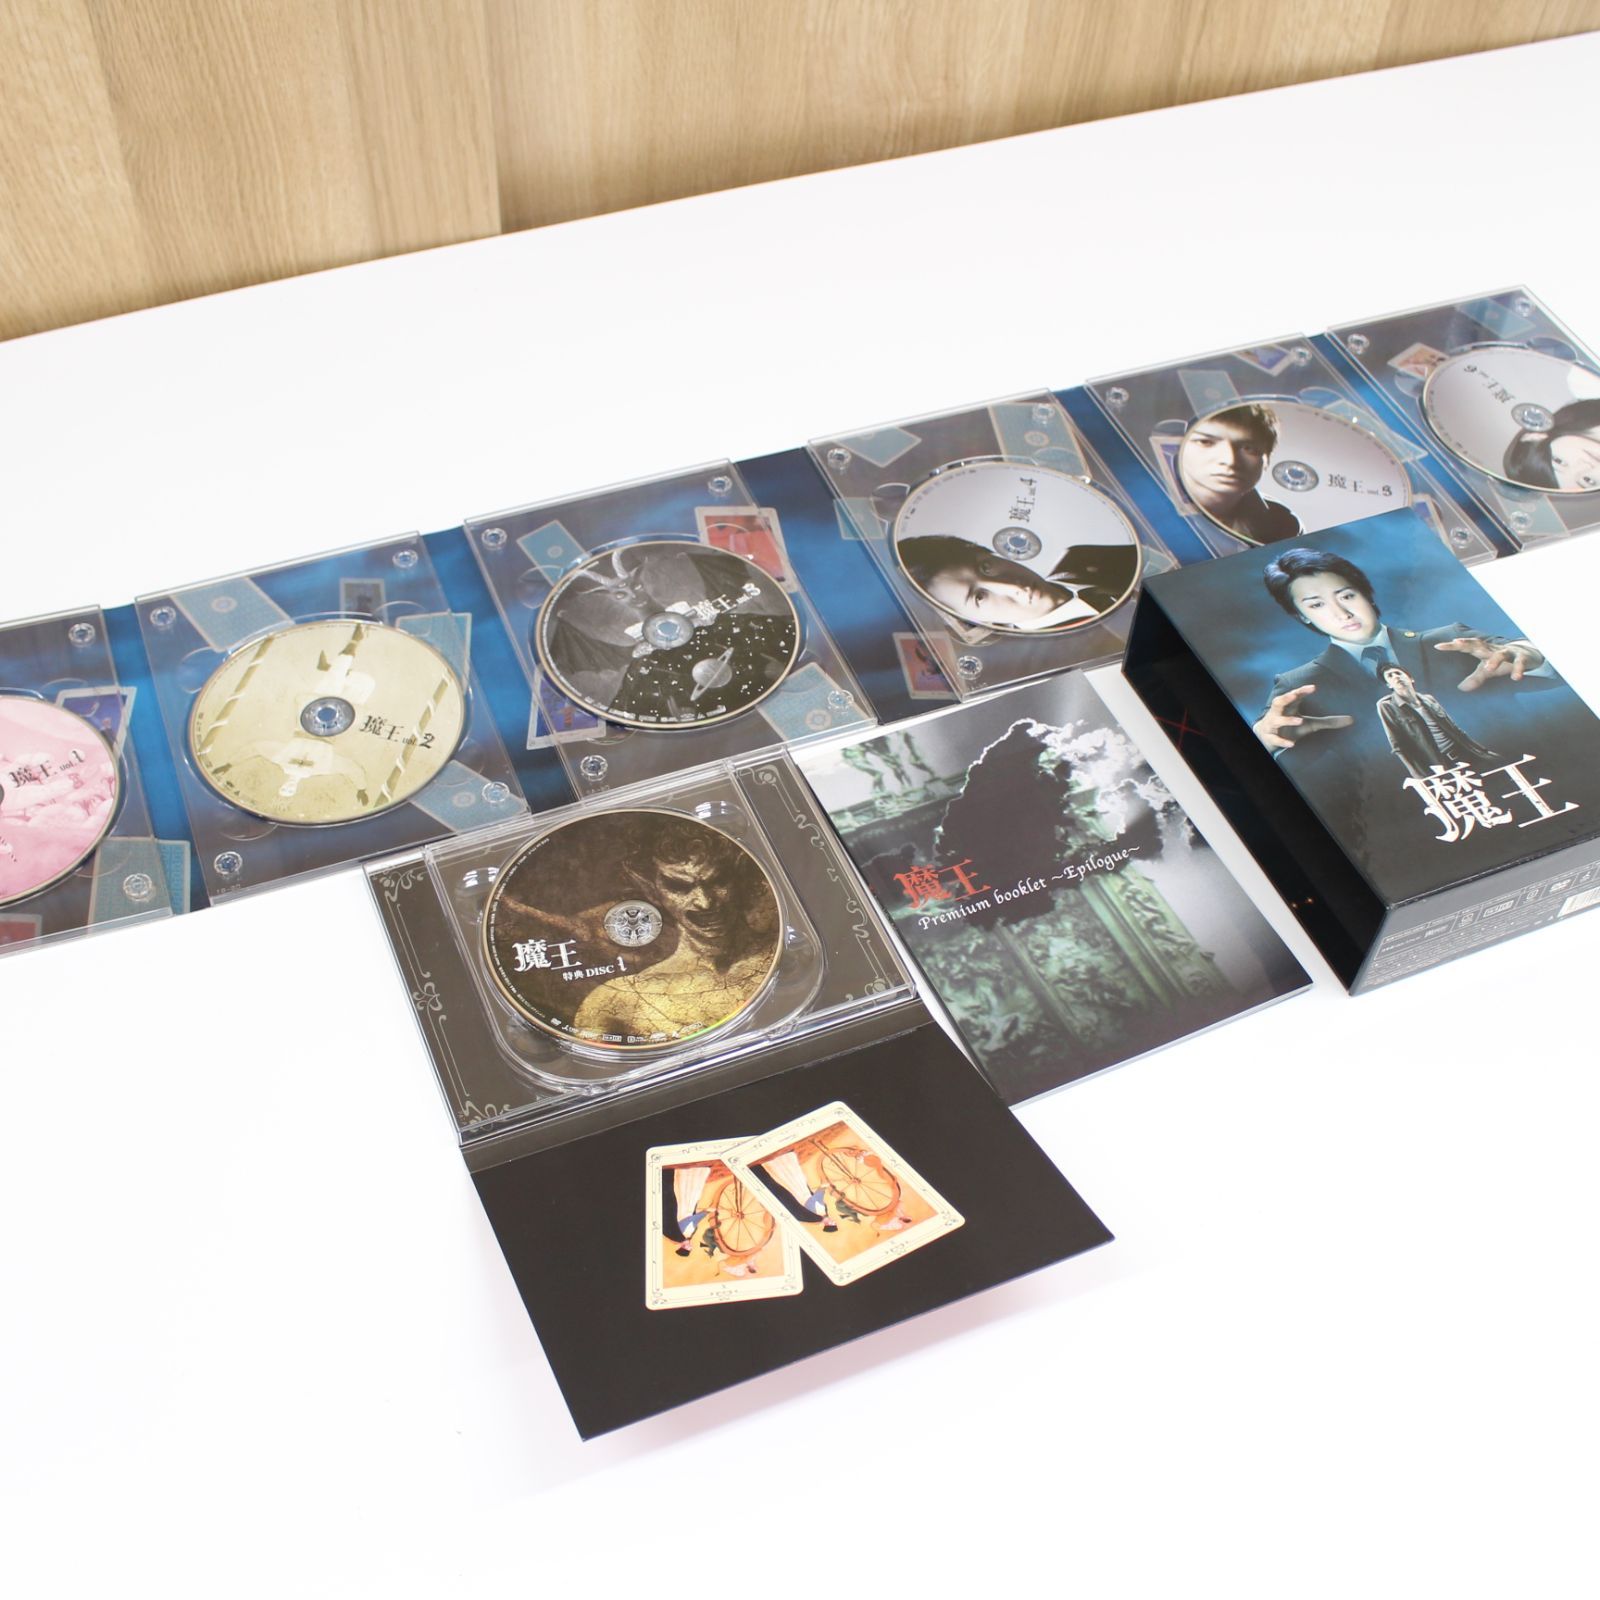 A978】魔王 DVD-BOX 8枚組 特典ディスク2枚付き - メルカリ